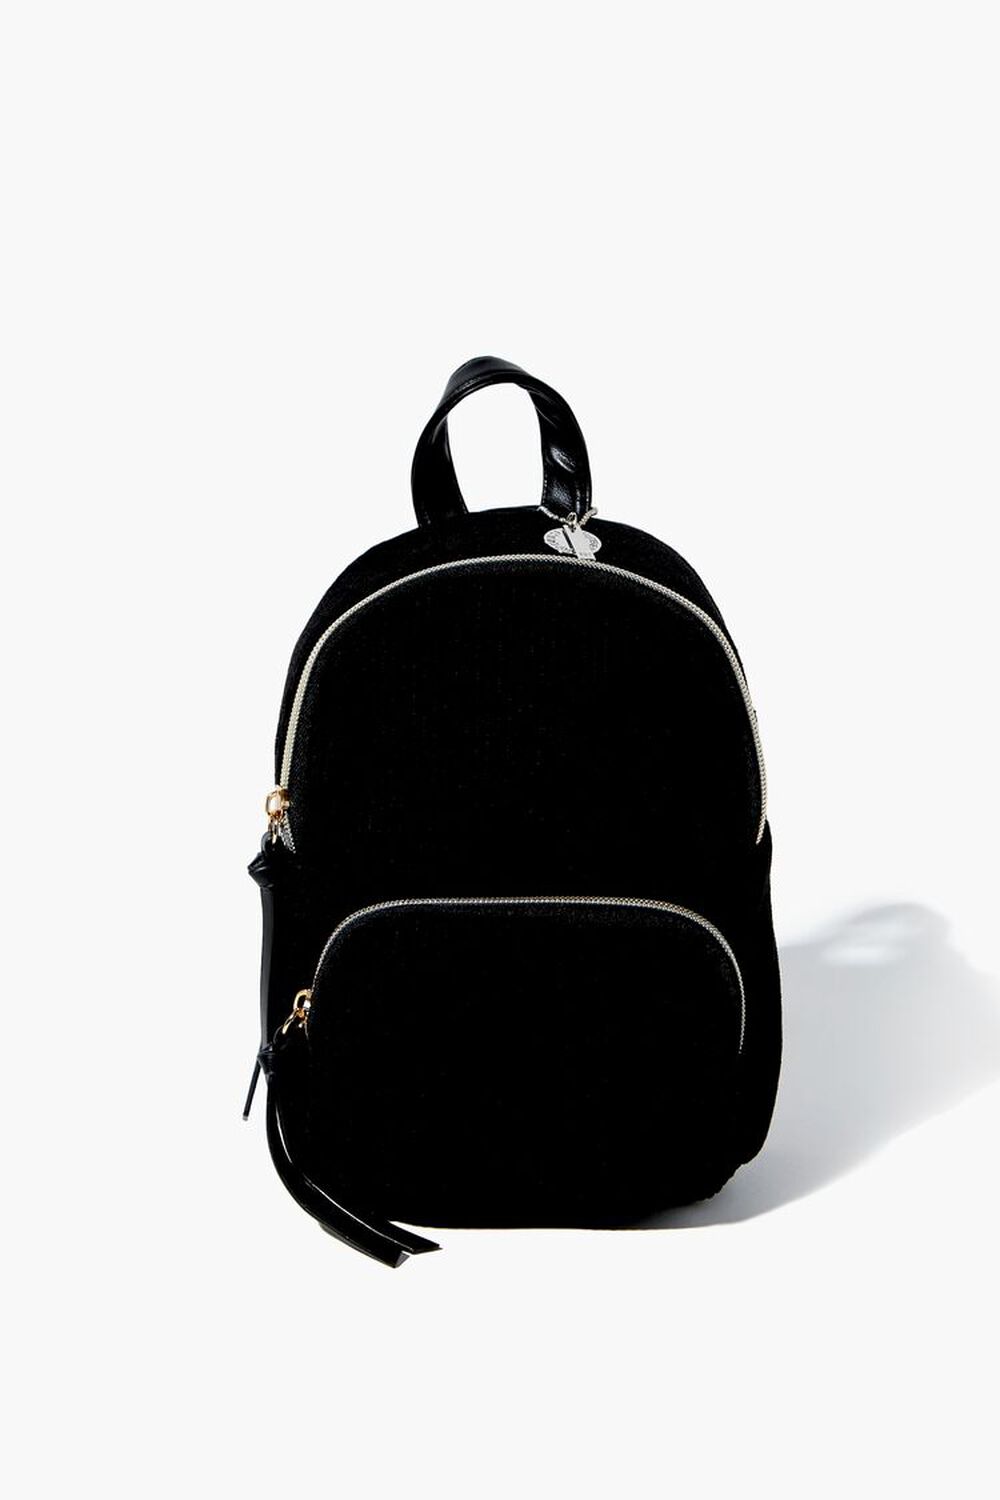 BLACK Zip-Top Backpack, image 1